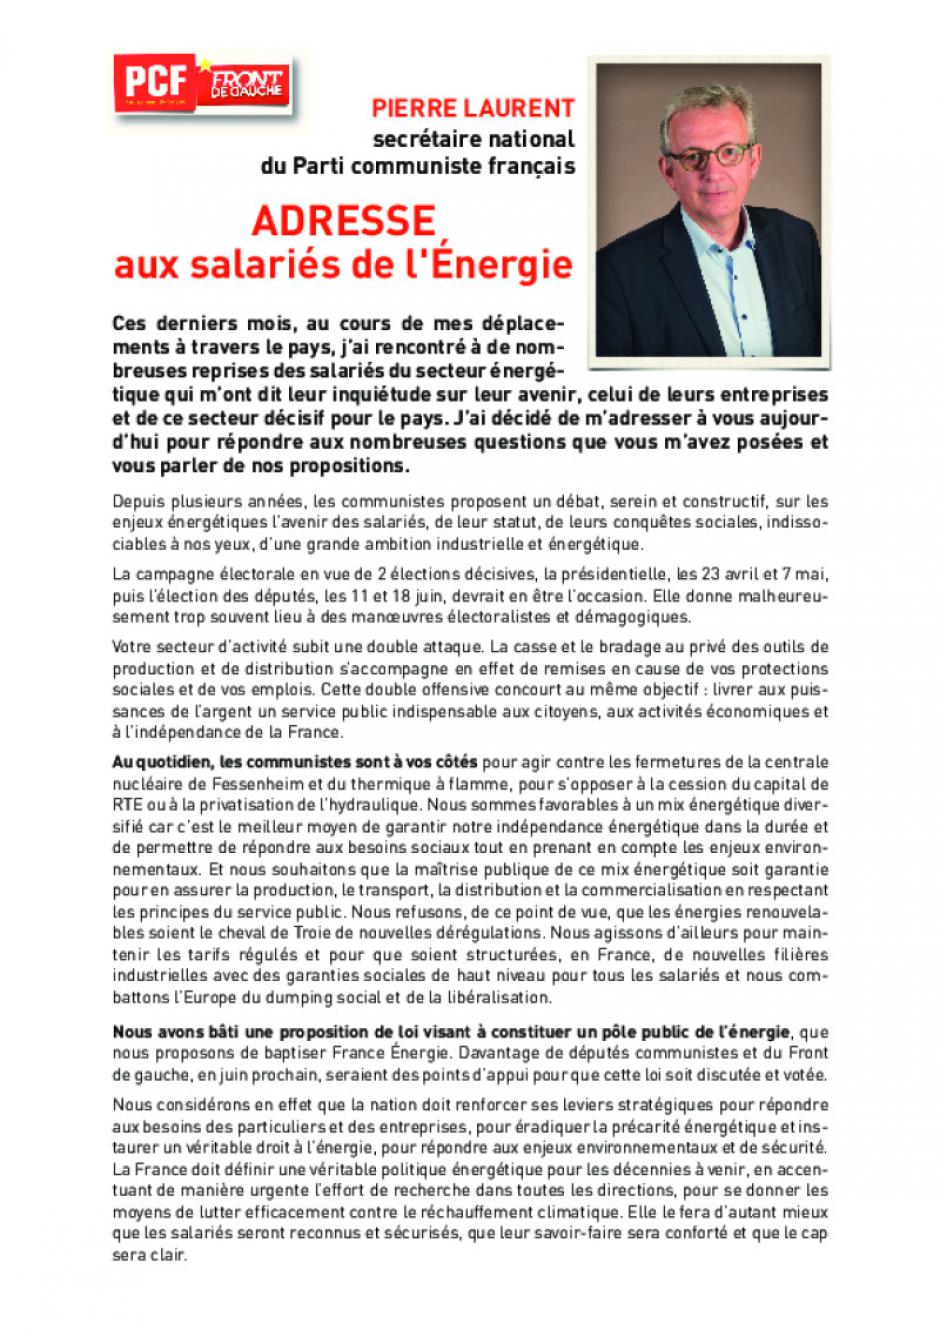 Adresse de Pierre Laurent aux salariés de l'énergie